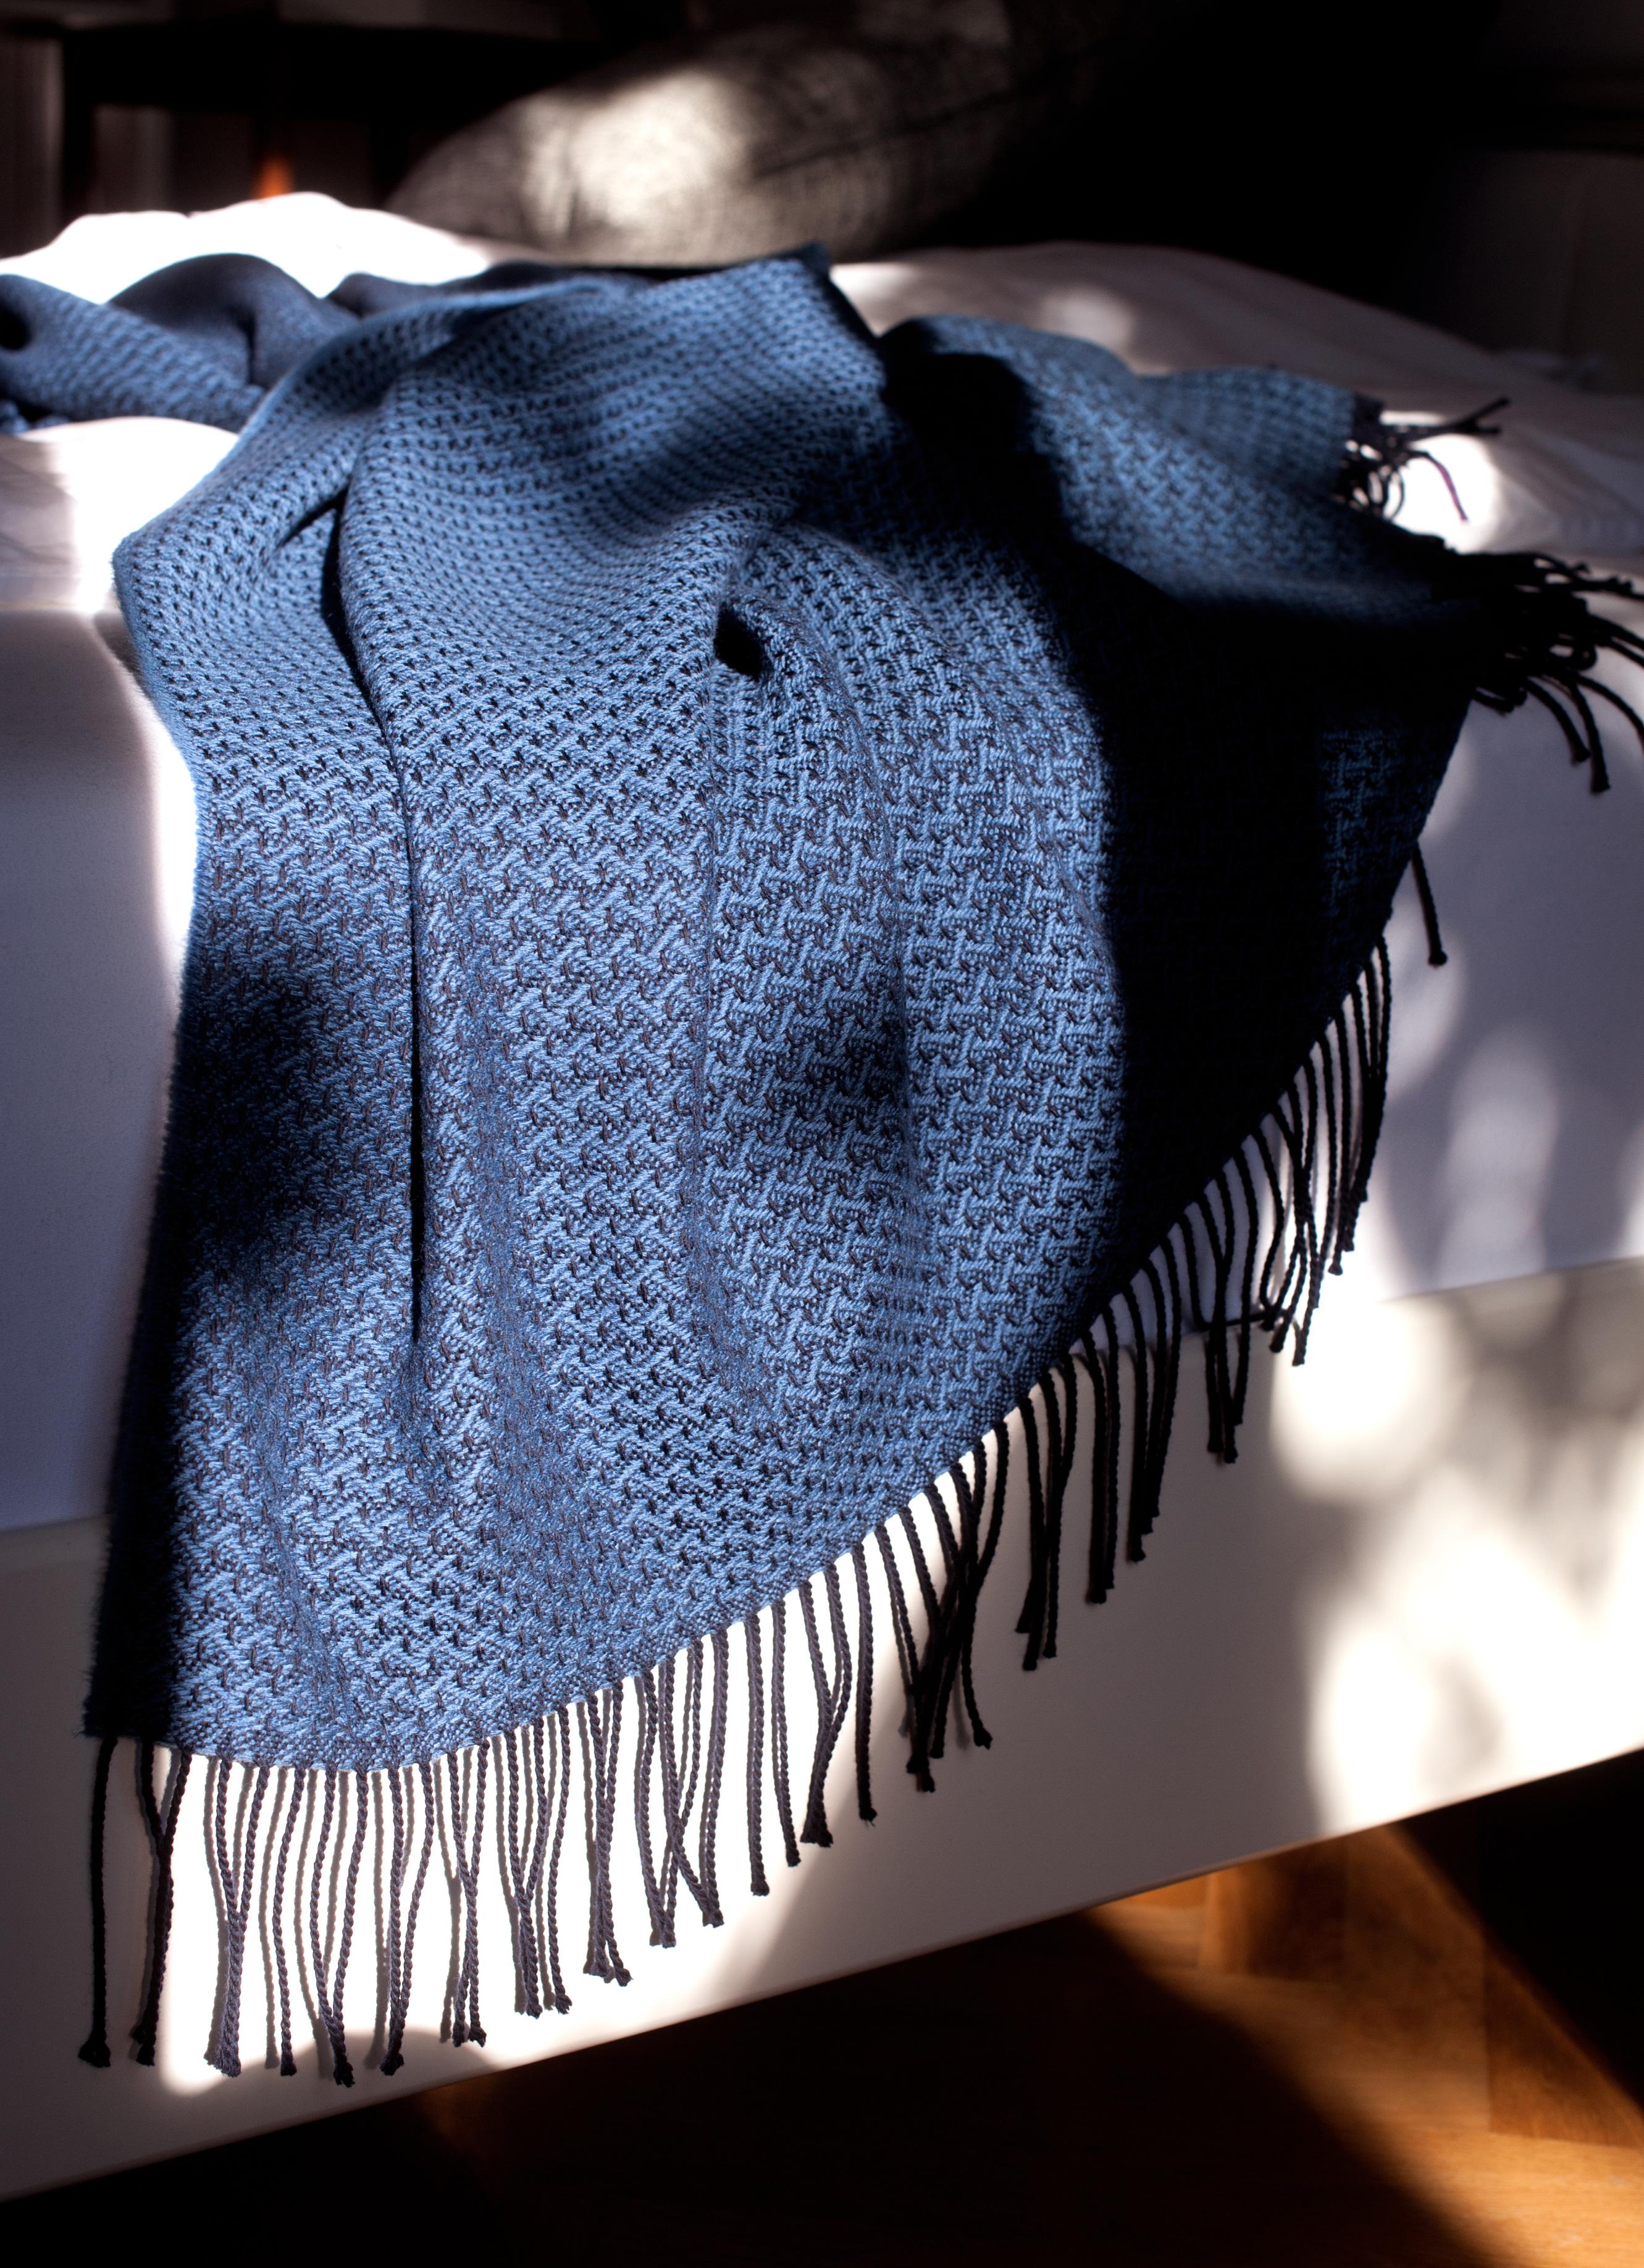 Entworfen in Berlin von Catharina Mende, gewebt aus 100% extrafeiner Merino in Schottland: Dieser exquisite Bettüberwurf in der Farbe Blau, gewebt in Schottland aus feinster extrafeiner Merino, ist ein Stück Schönheit und Eleganz für jedes